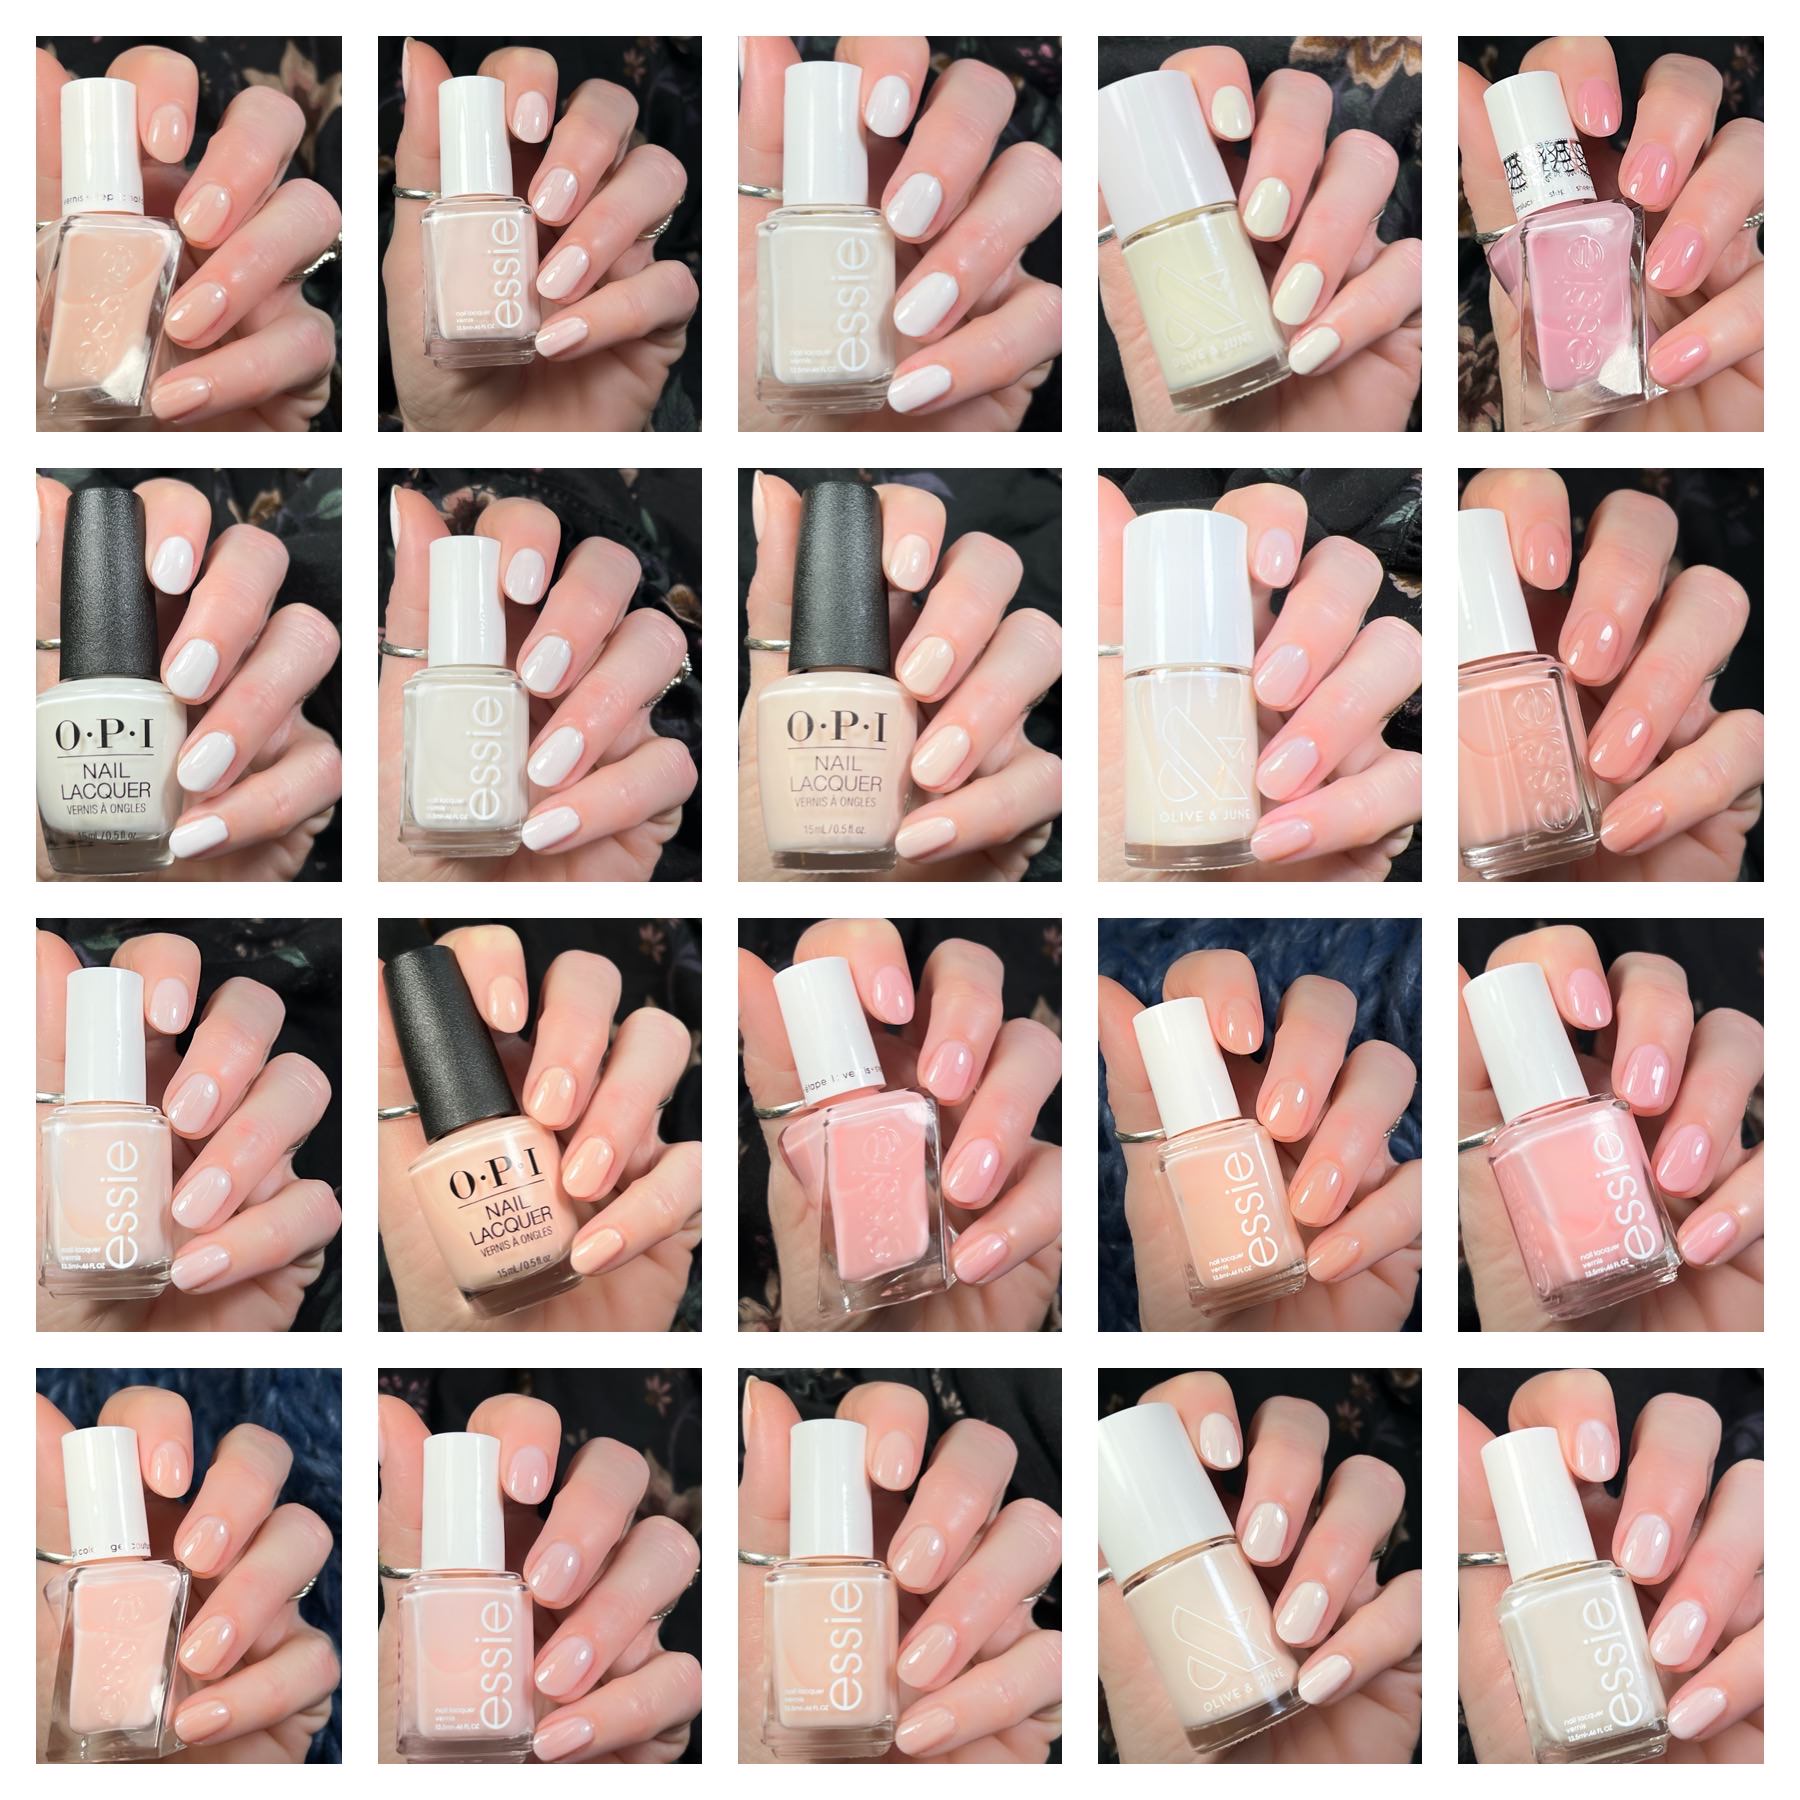 Coming Soon | Green nails, Essie nail, Essie nail polish